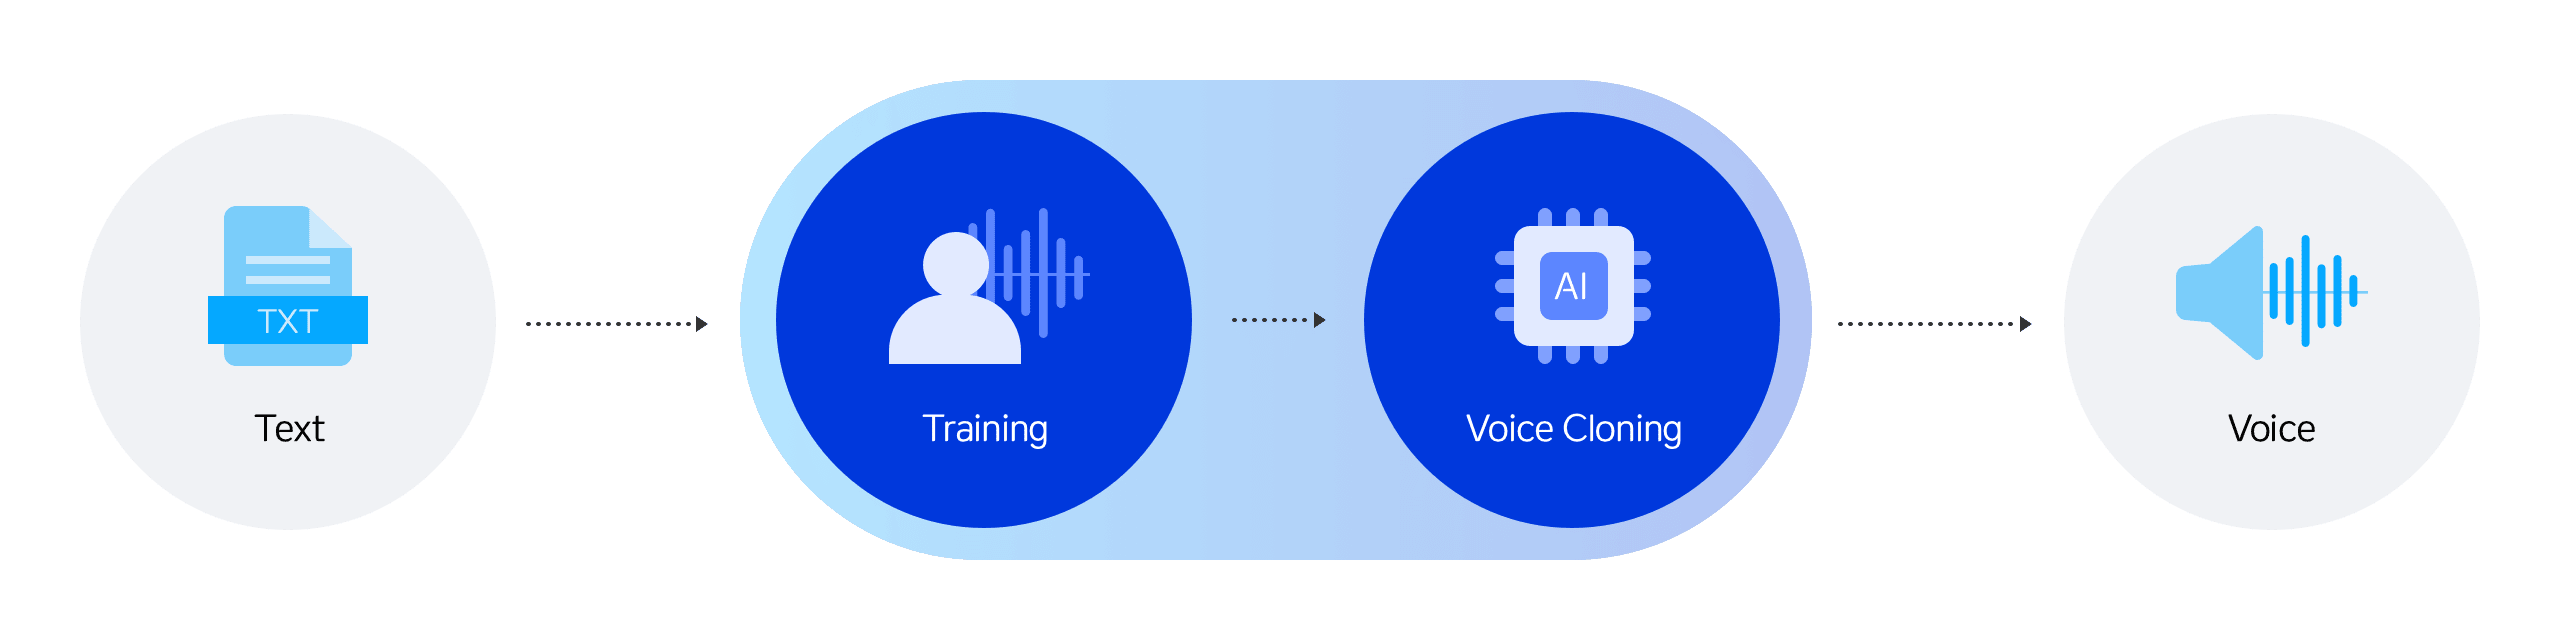 Voice Cloning 프로세스